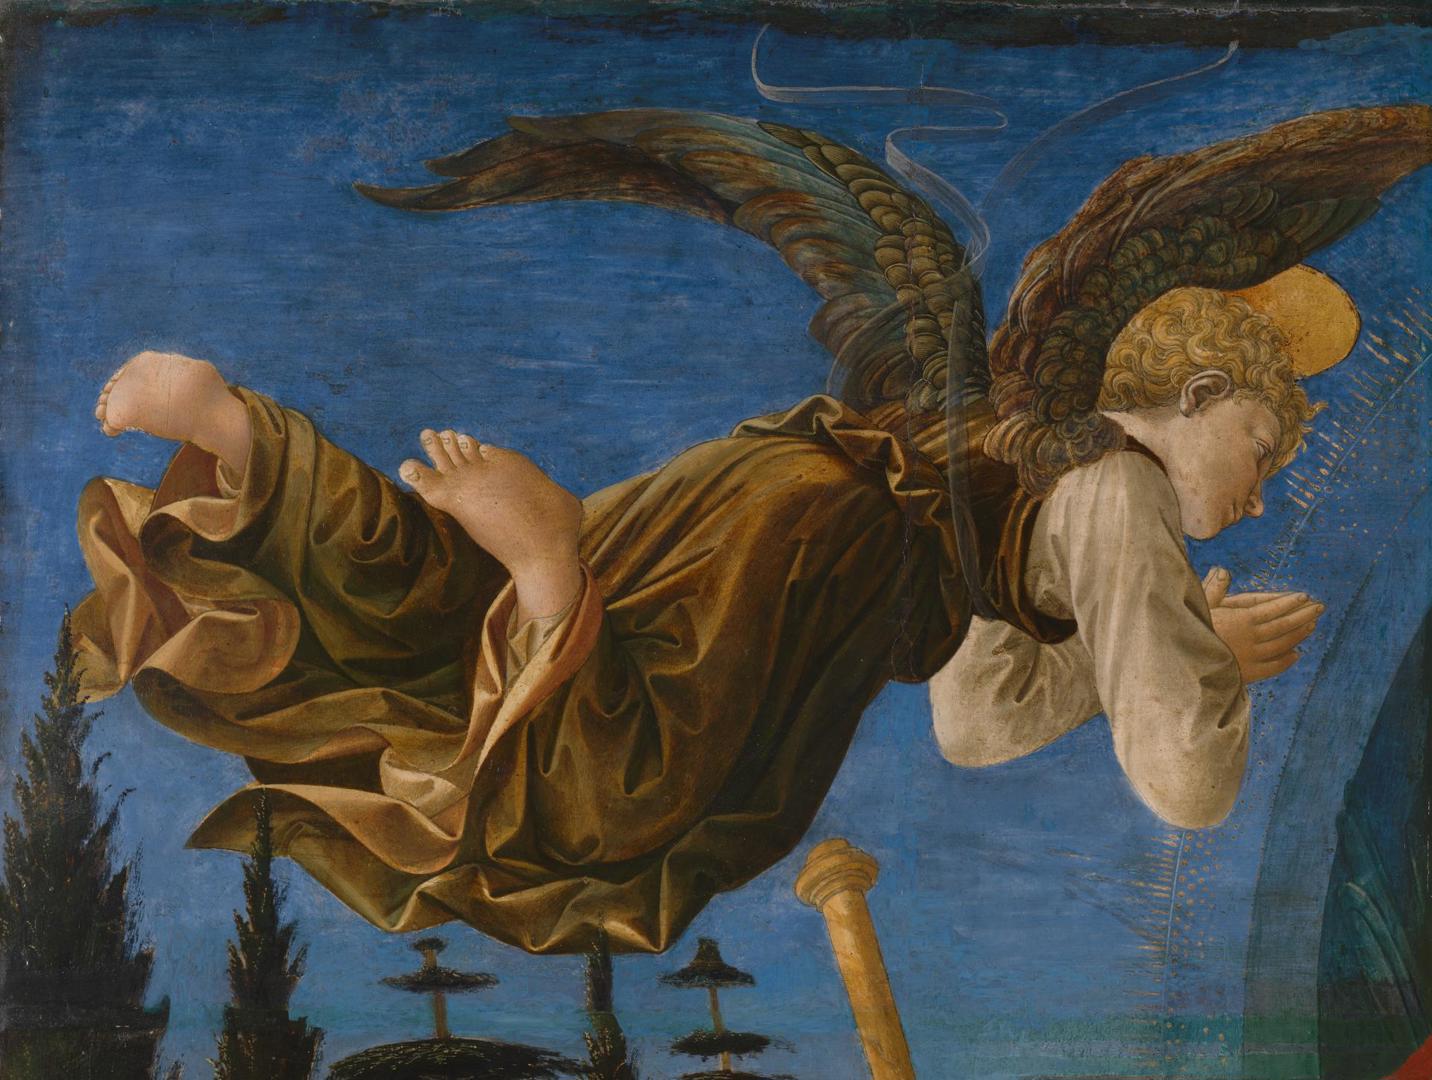 Angel (Left Hand) by Francesco Pesellino, Fra Filippo Lippi and workshop of Fra Filippo Lippi